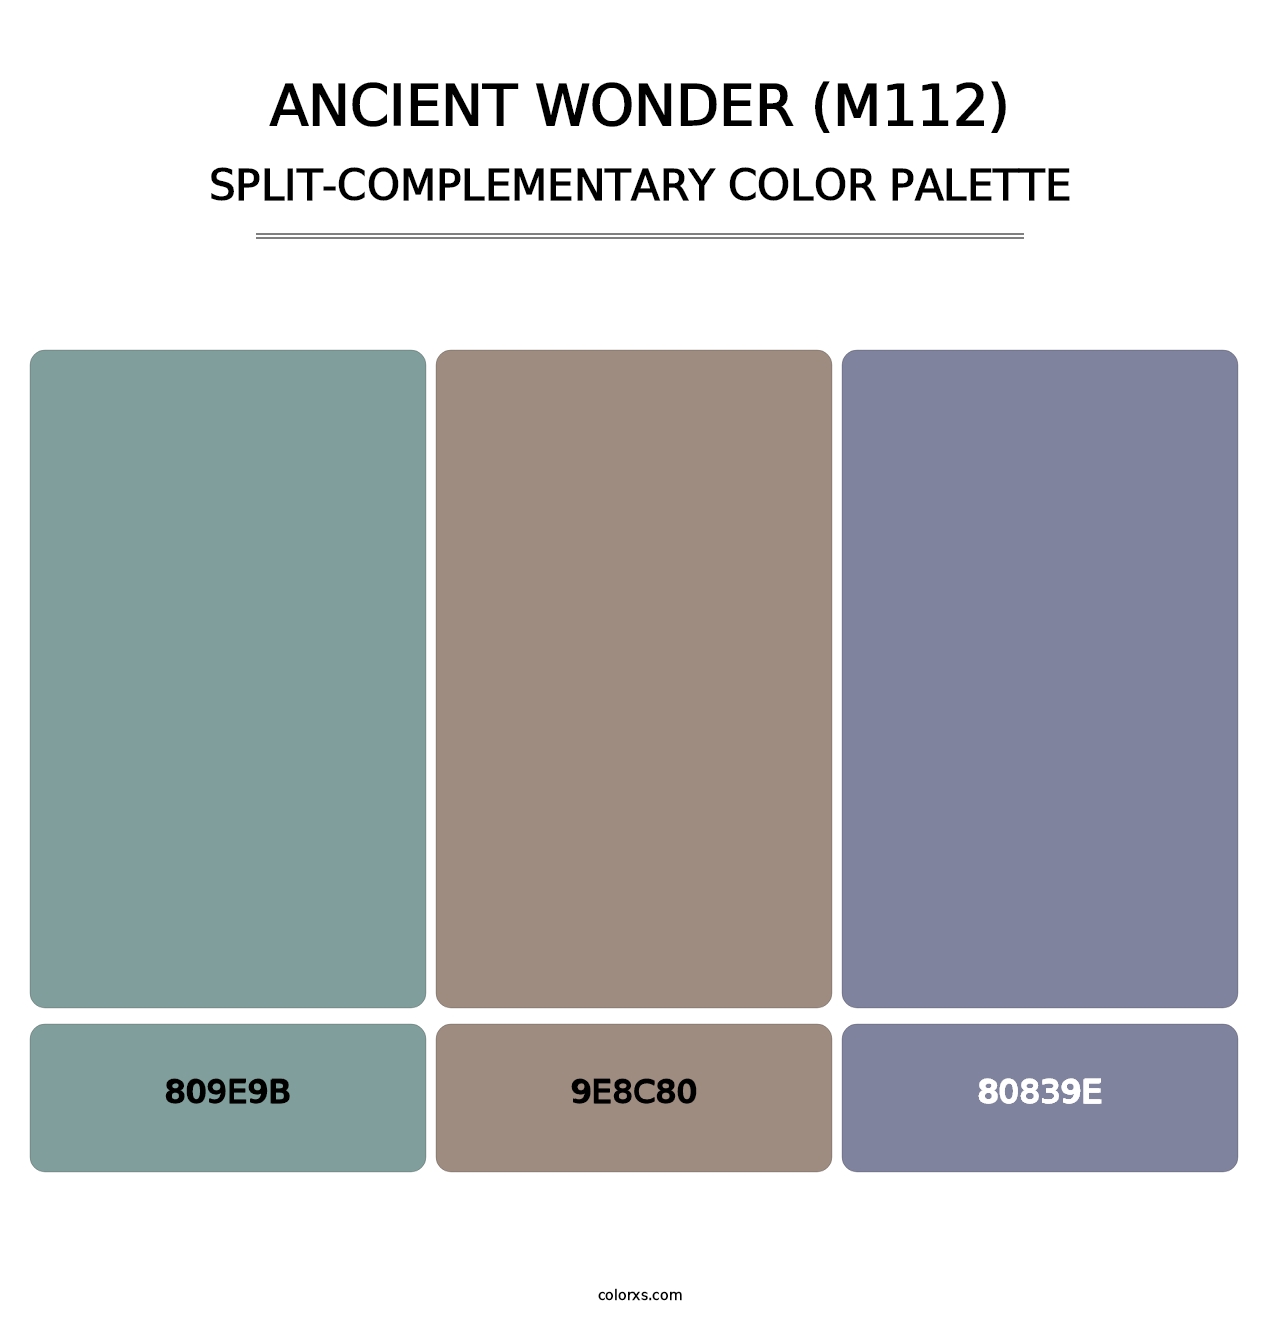 Ancient Wonder (M112) - Split-Complementary Color Palette